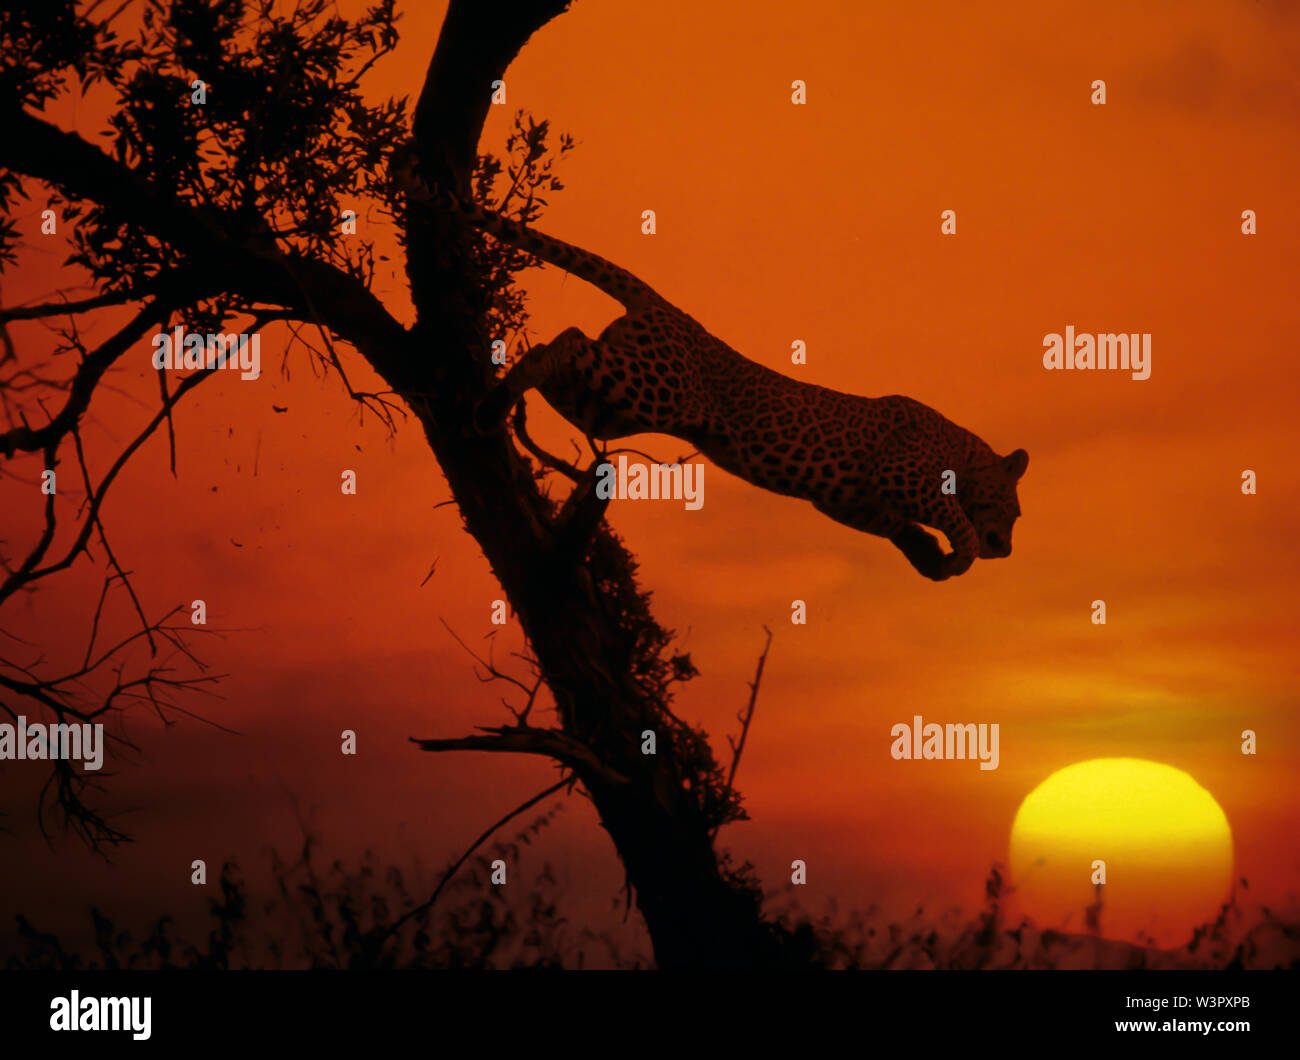 Leopardo africano (Panthera pardus) desciende de un árbol. Siluetas contra el sol poniente, Kenya Foto de stock